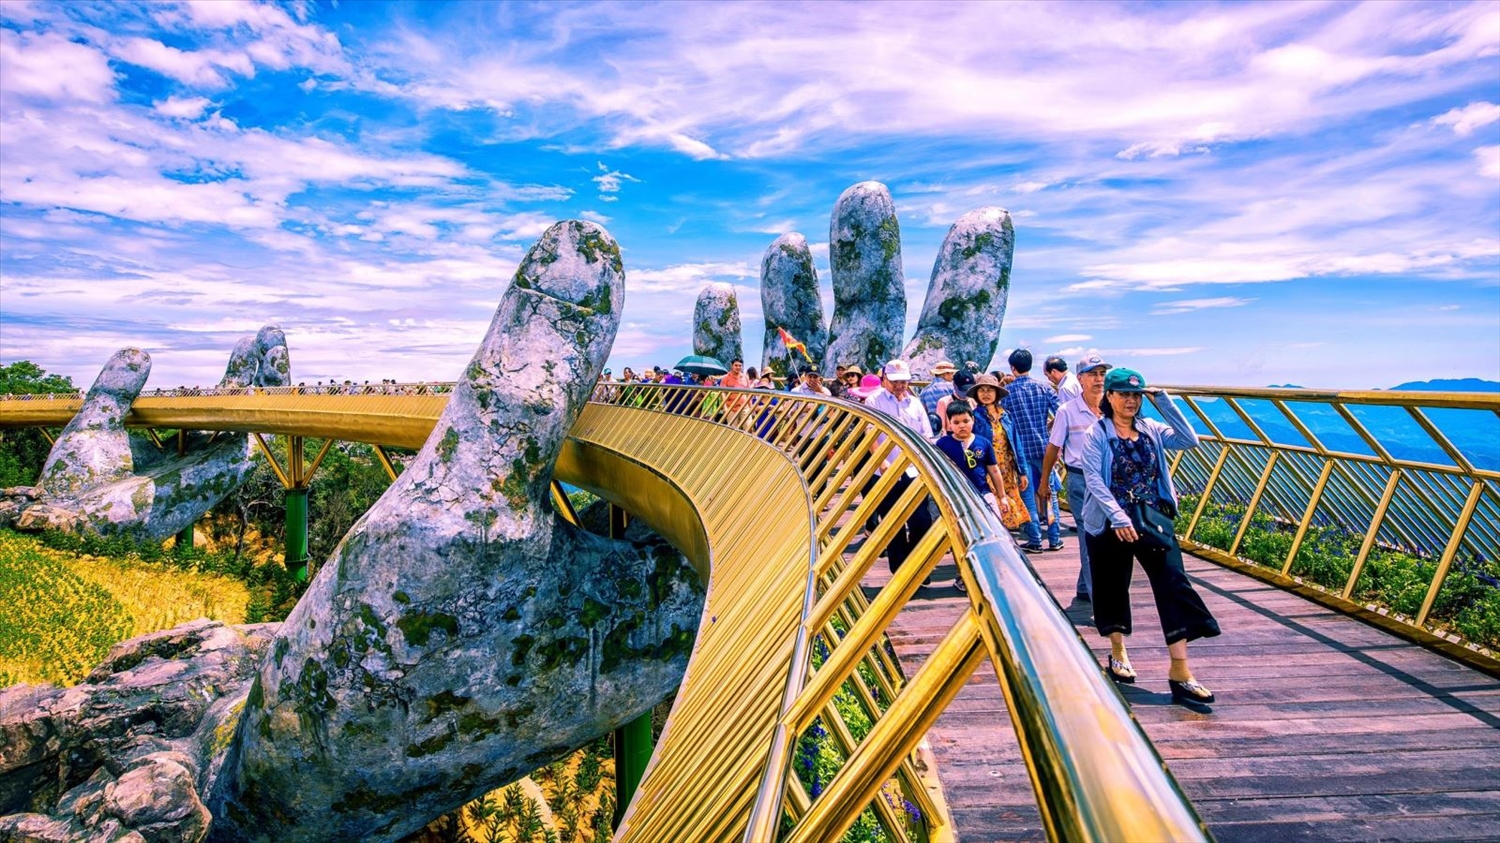 Quảng bá du lịch cần những giải pháp đồng bộ. (Trong ảnh: Cầu Vàng tại Sun World Ba Na Hills - Đà Nẵng đã lọt Top 100 điểm đến hấp dẫn nhất thế giới do Tạp chí Time bình chọn)